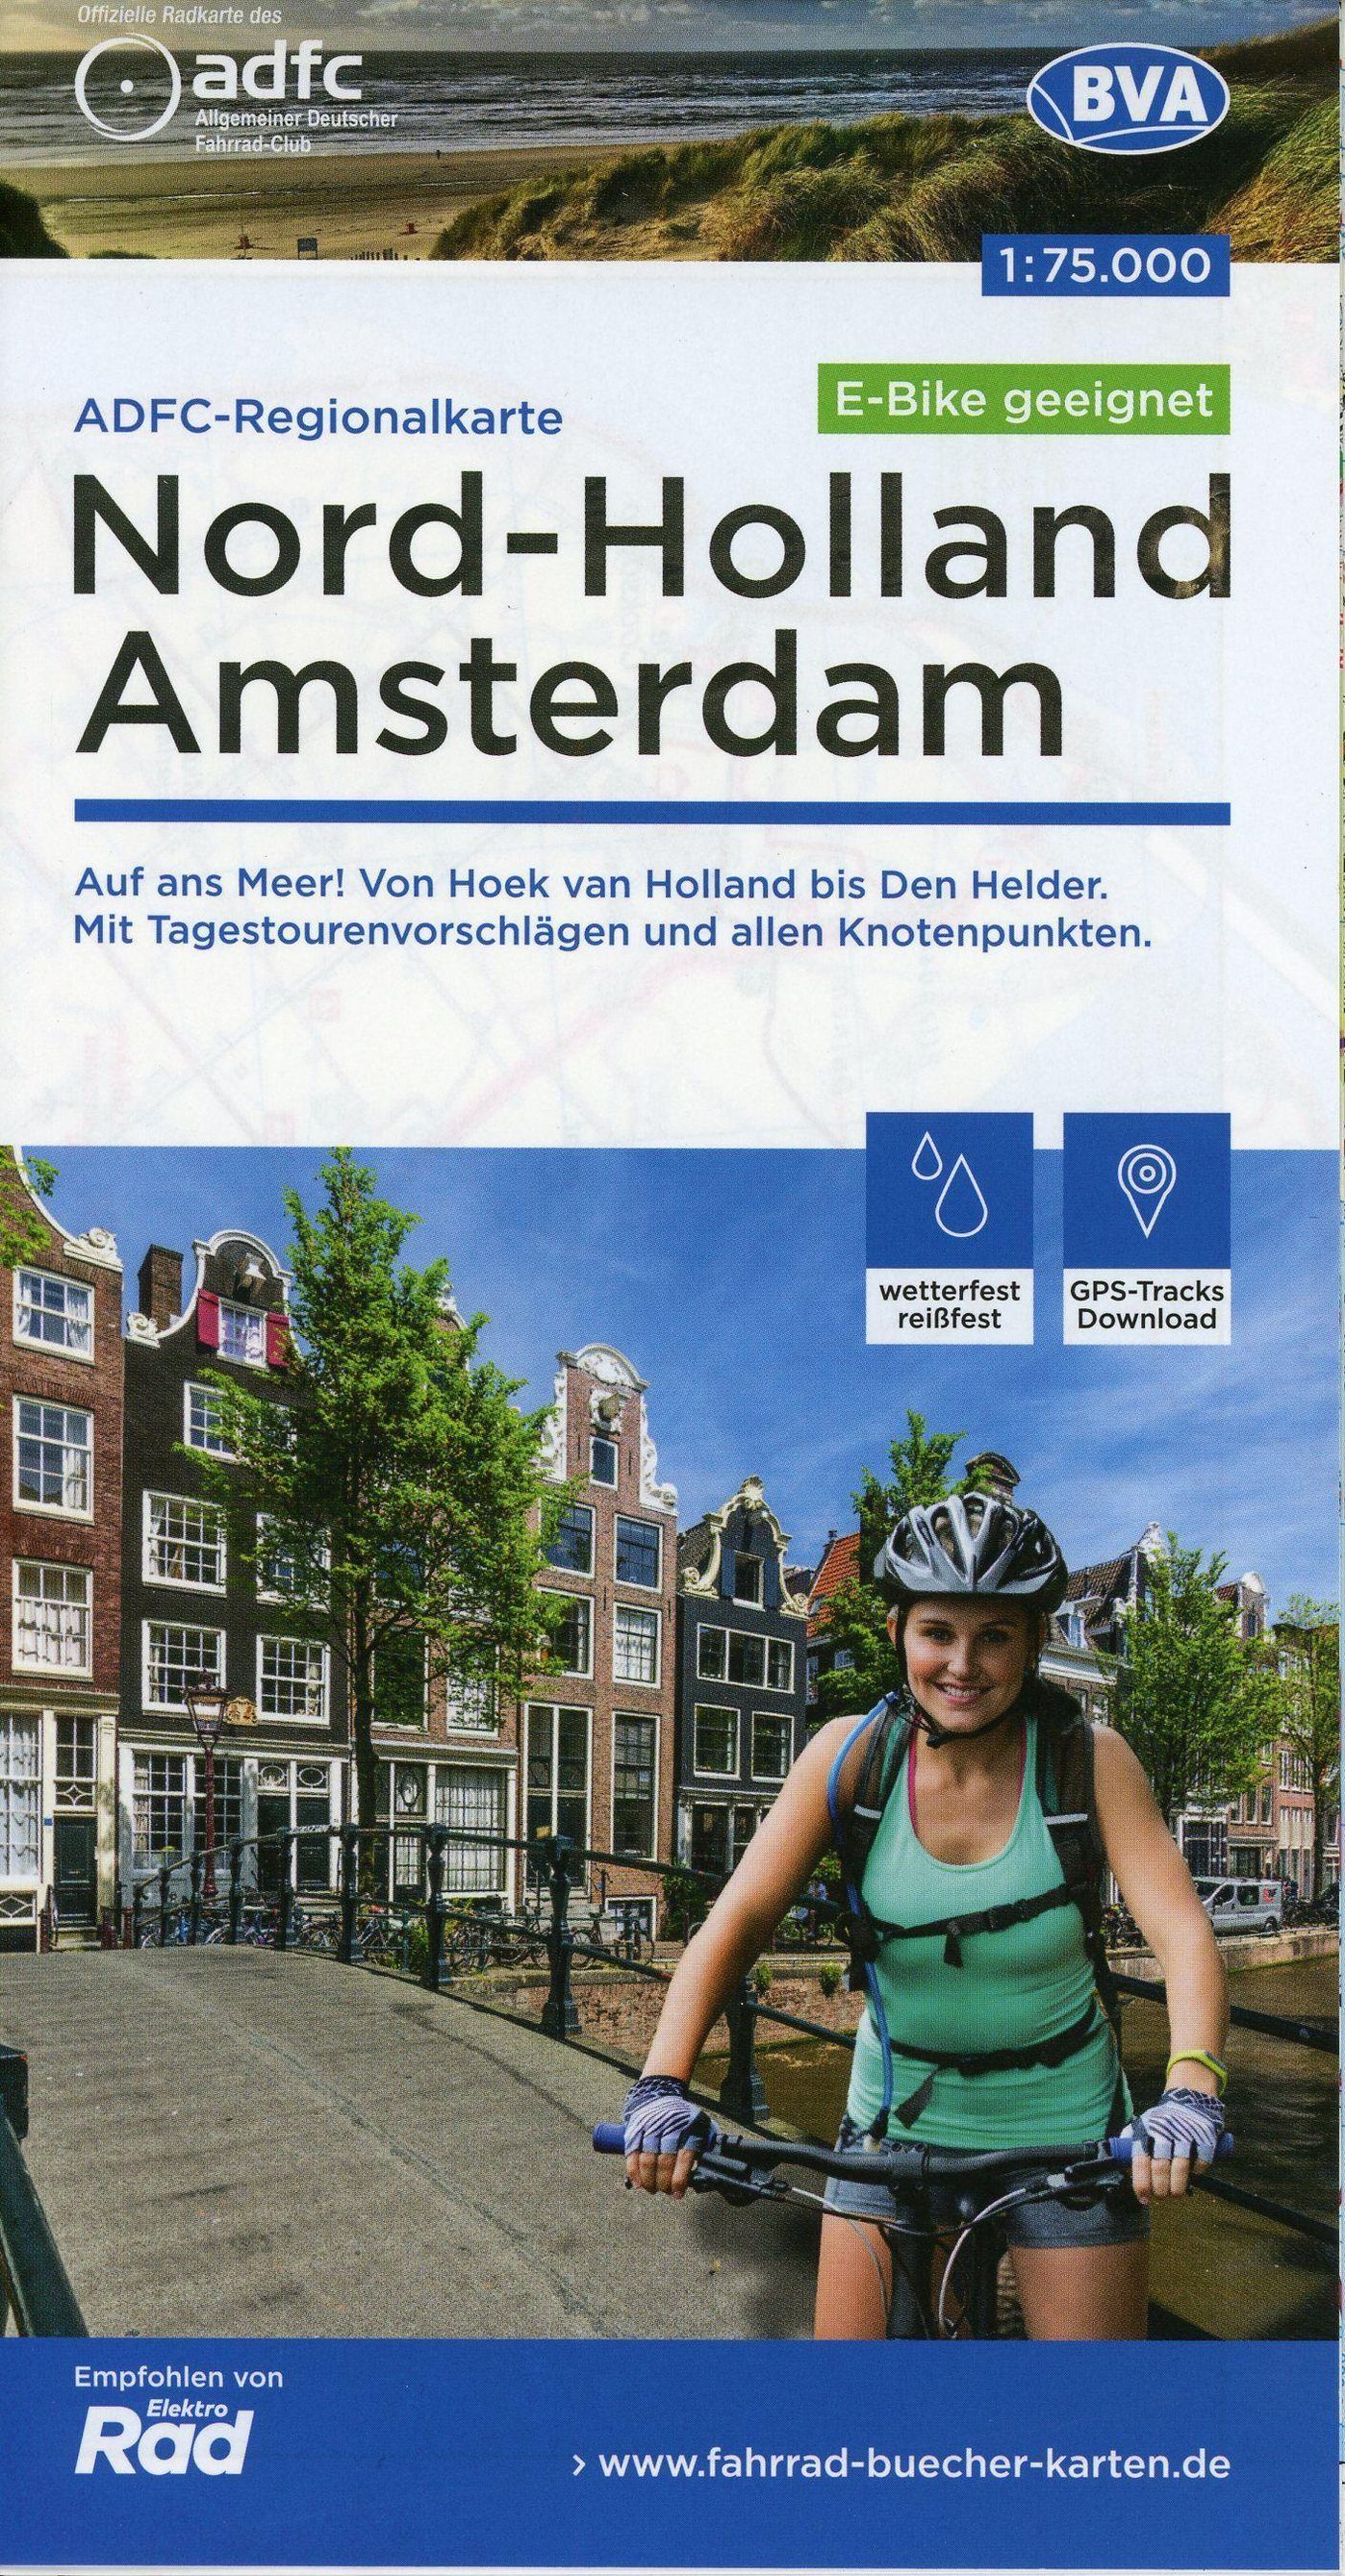 ADFC-Regionalkarte Nord-Holland Amsterdam 1:75.000, reiß- und wetterfest,  GPS-Tracks Download - E-Bike geeignet | Weltbild.at